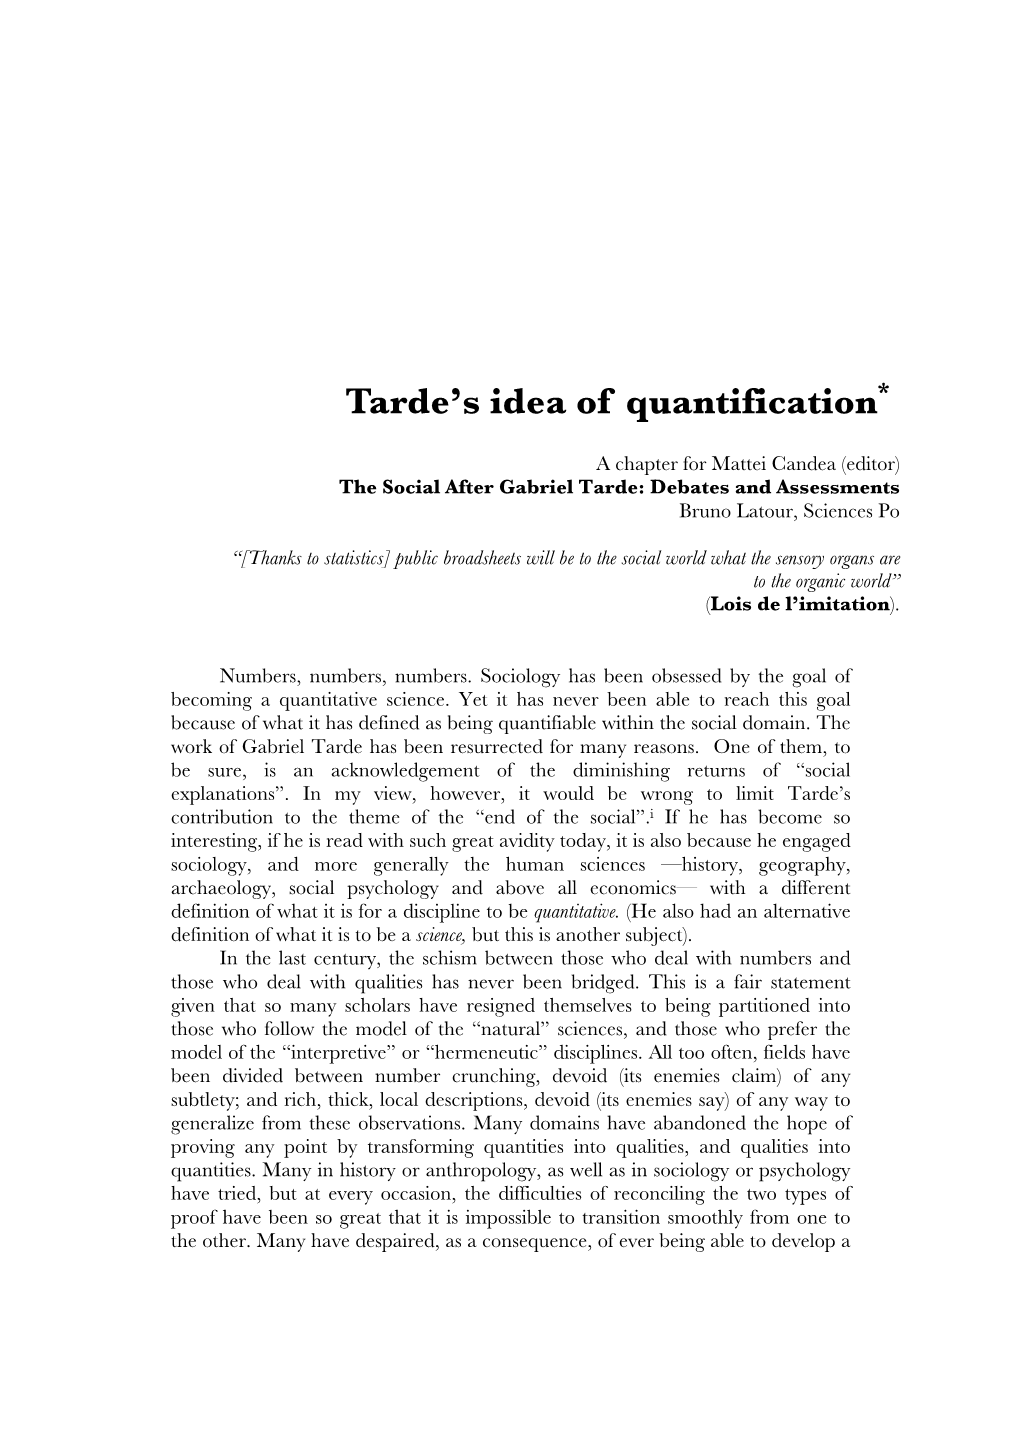 Tarde's Idea of Quantification*